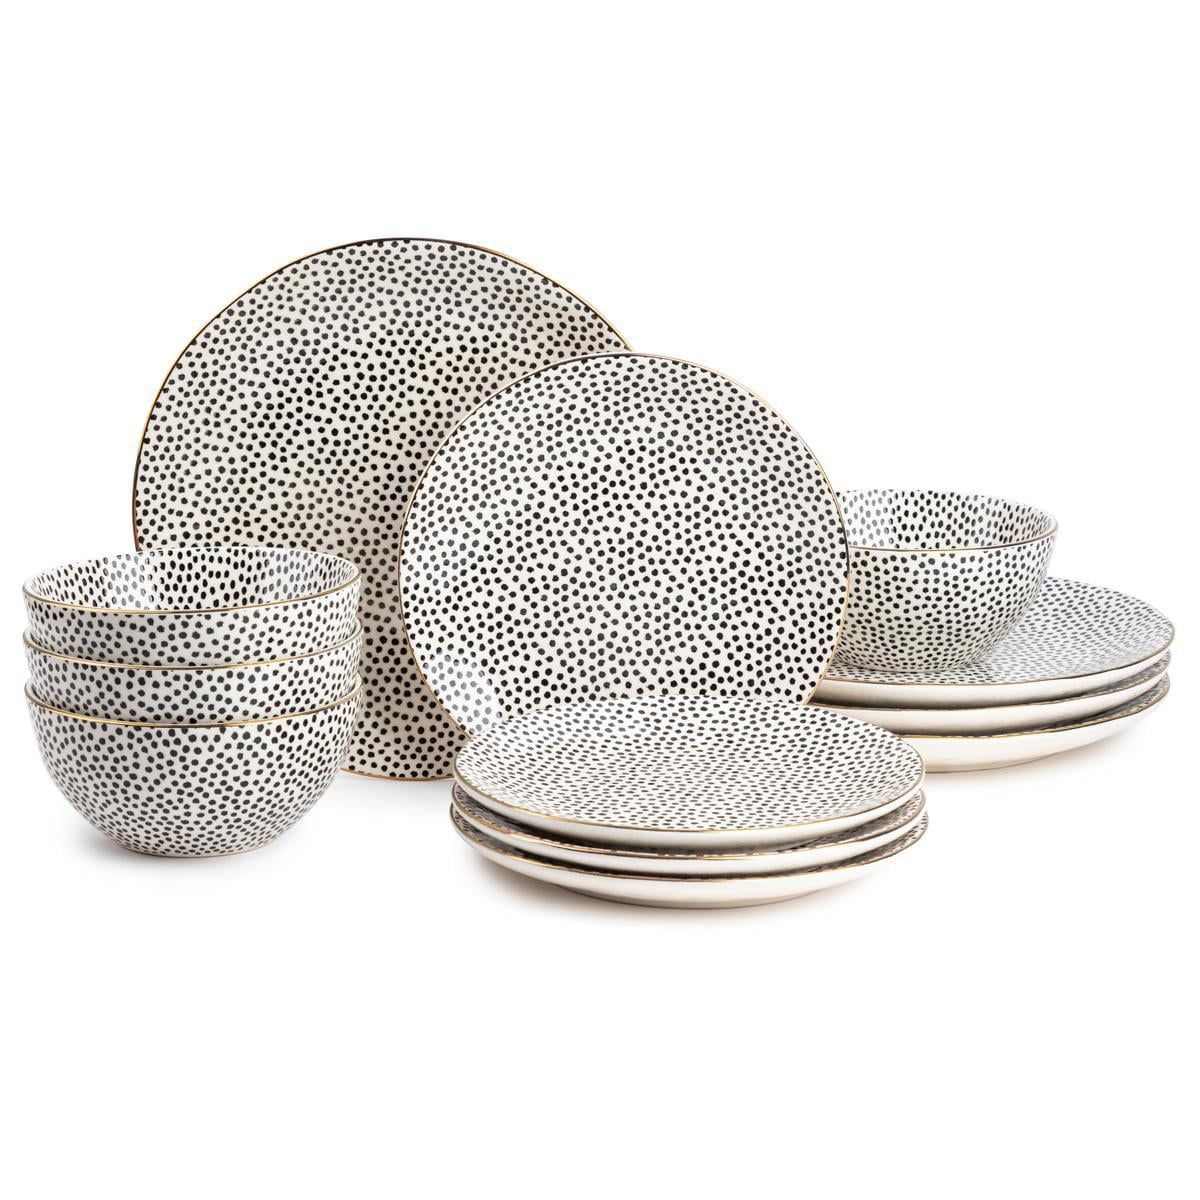 Thyme & Table Dinnerware Black & White Dot Stoneware, 12 Piece Set | Walmart (US)